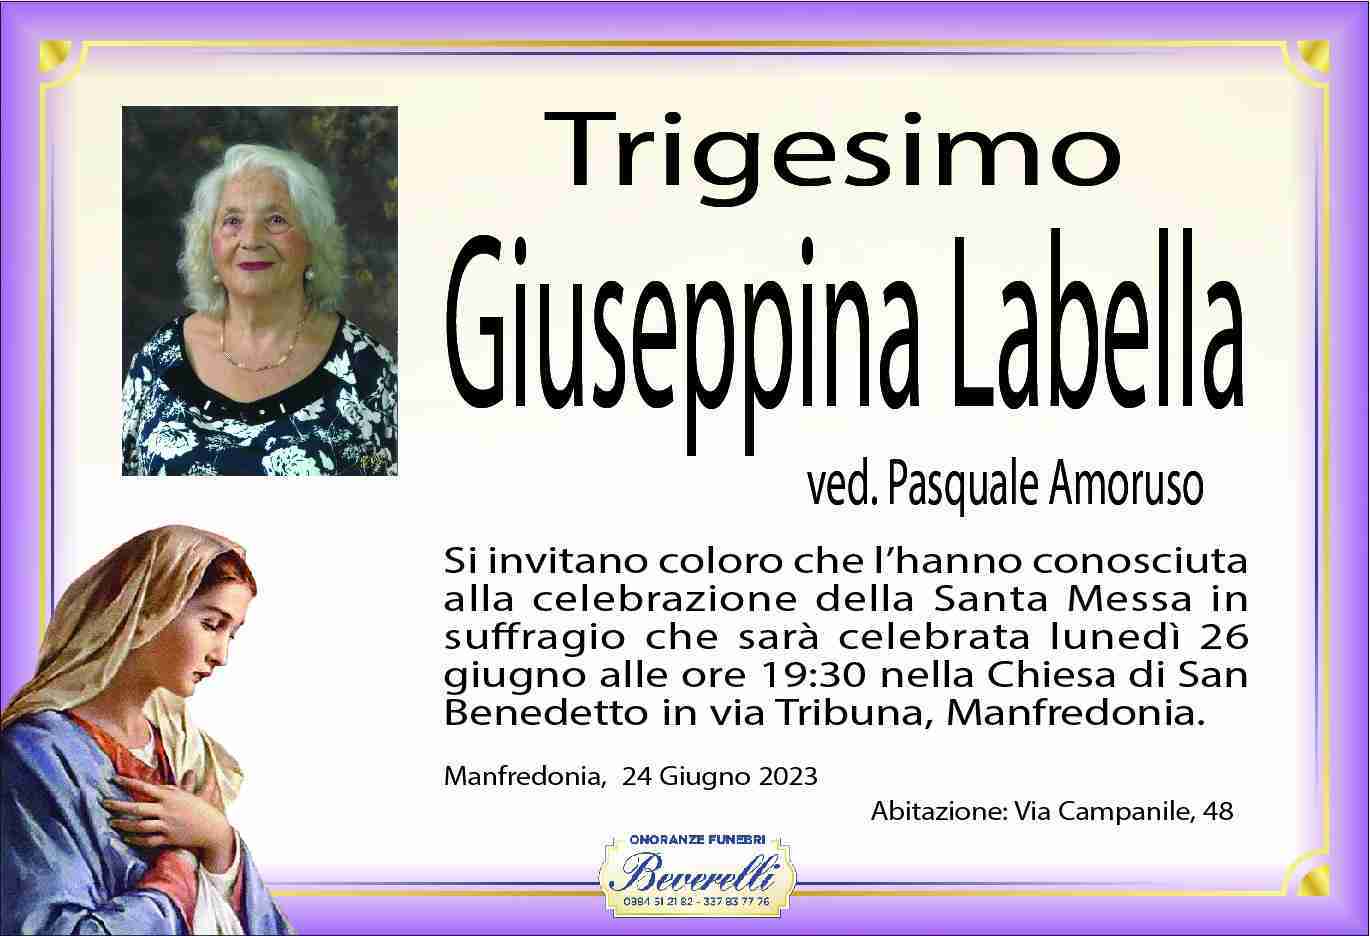 Giuseppina Labella